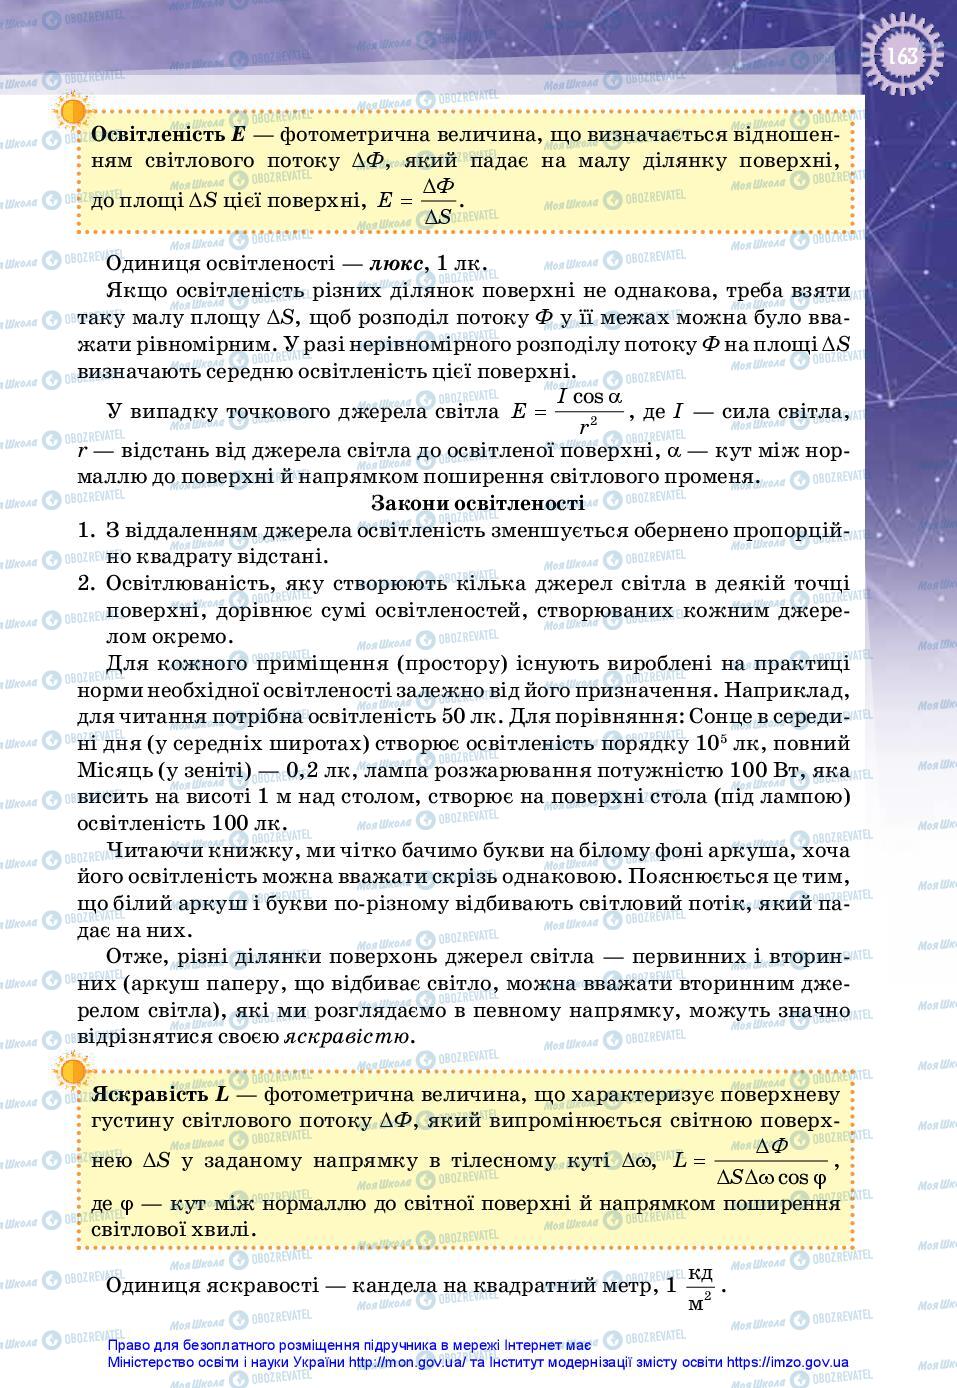 Учебники Физика 11 класс страница 163